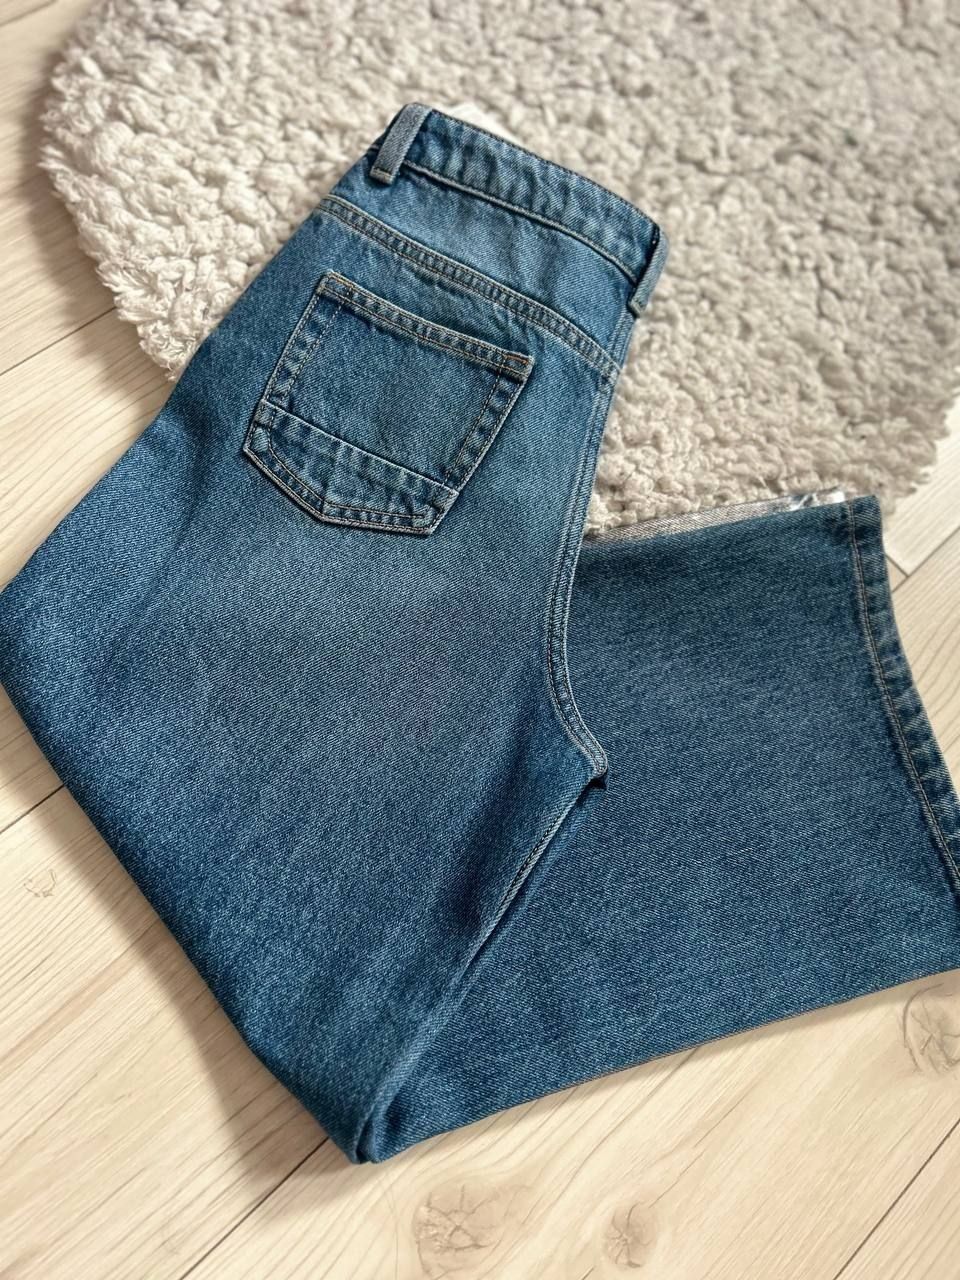 Нові джинси для дівчинки 9-10 років у цікавому дизайні з посрібленням.